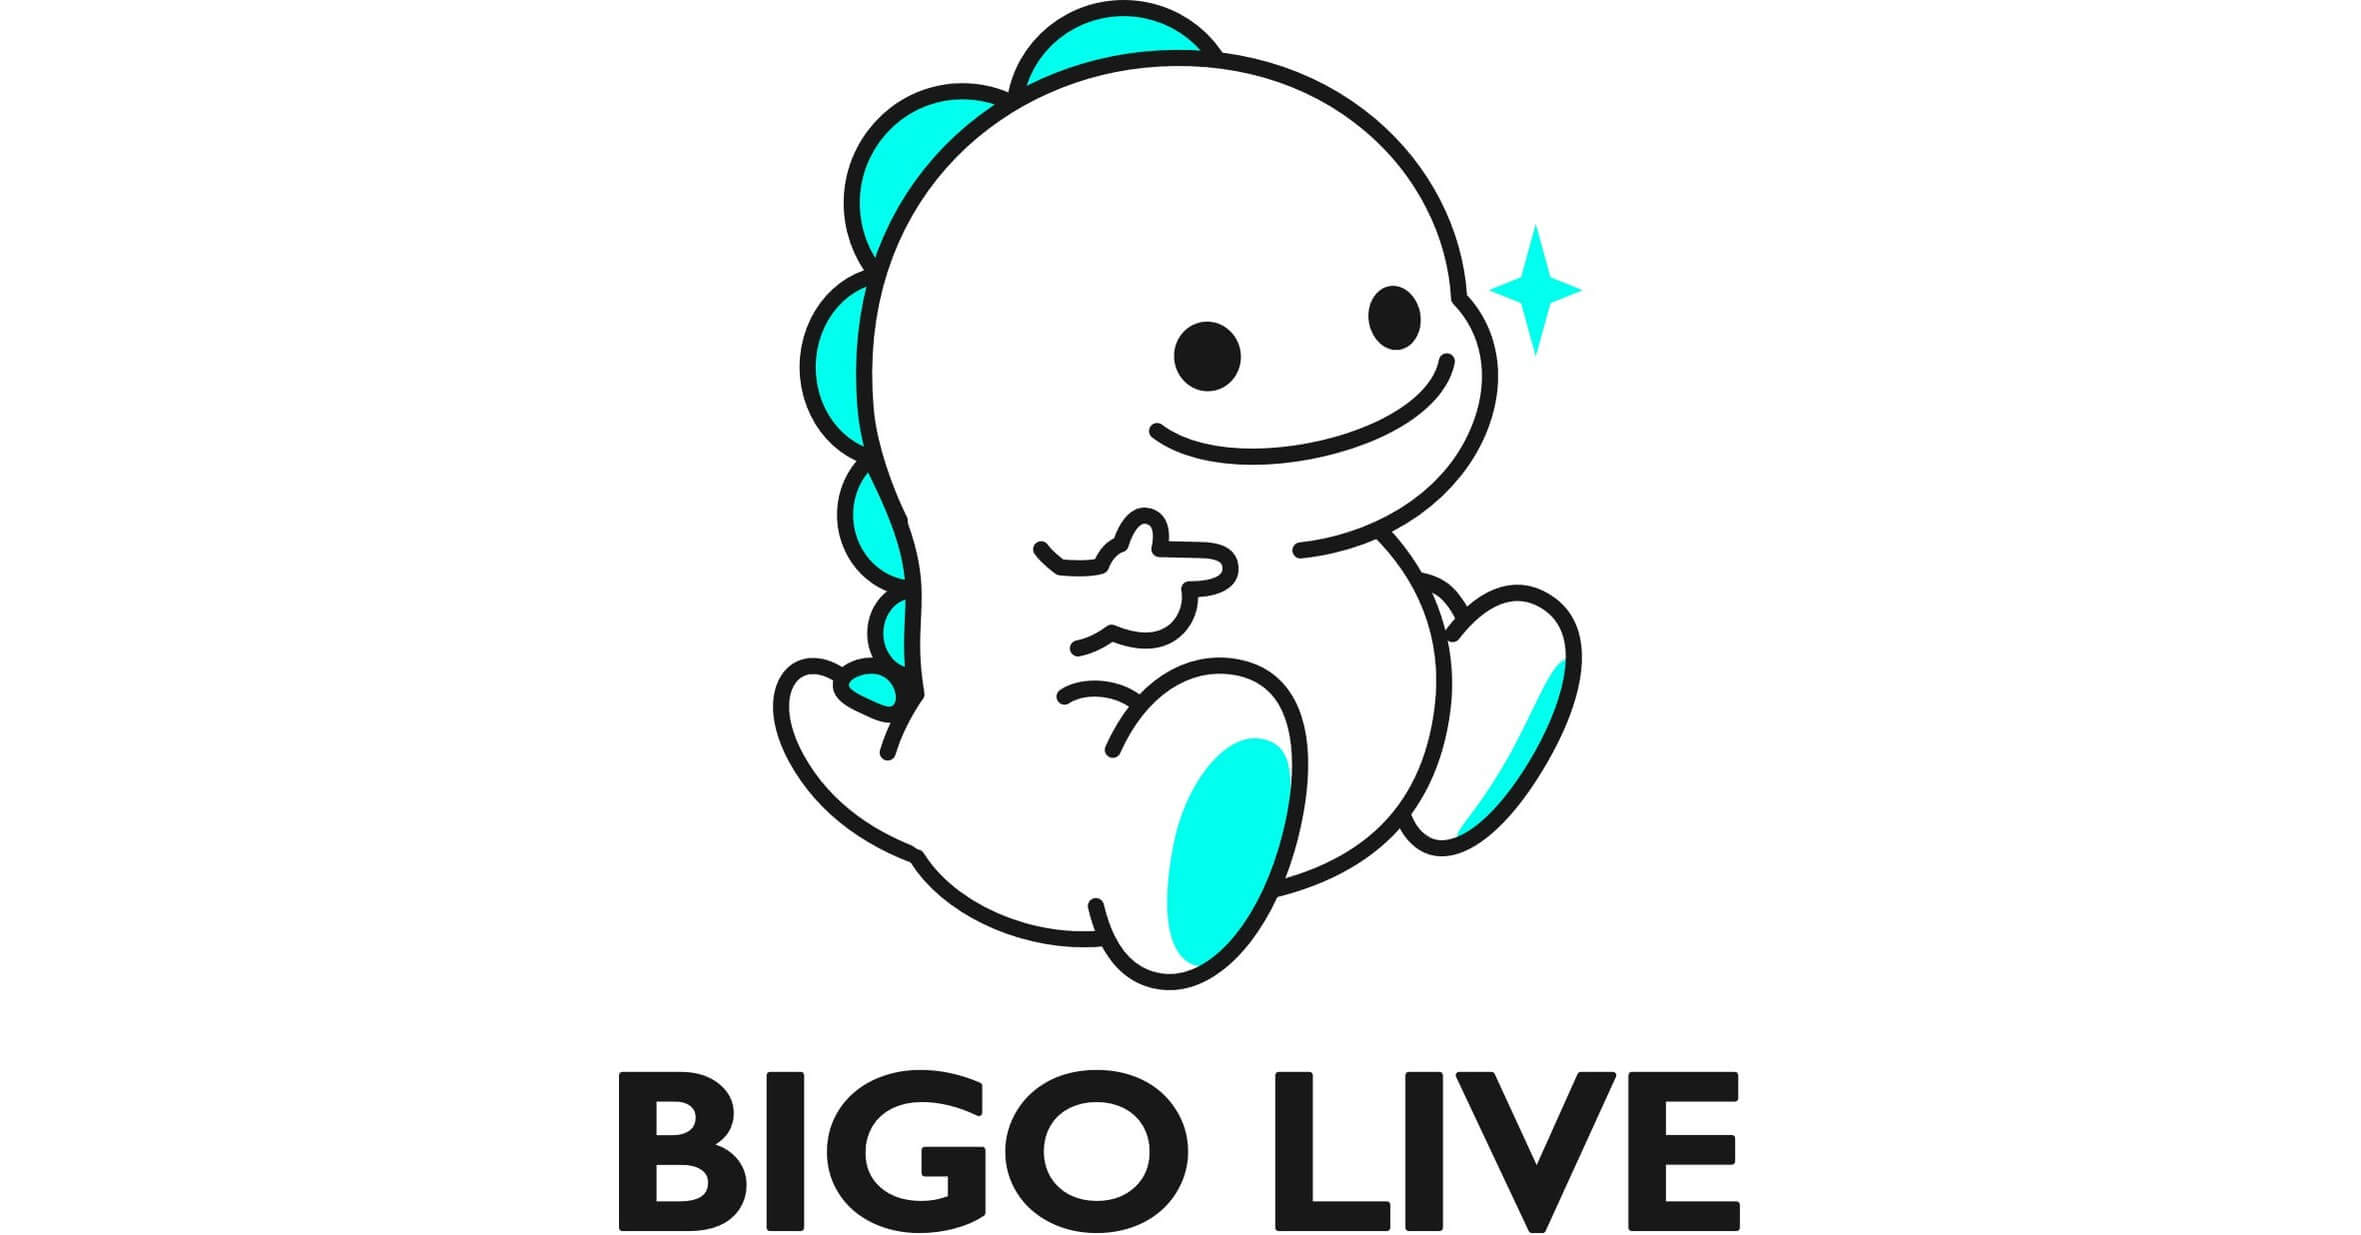 Bigo Live Nedir? Bigo Live'dan Para Kazanmak - Bakiye.org